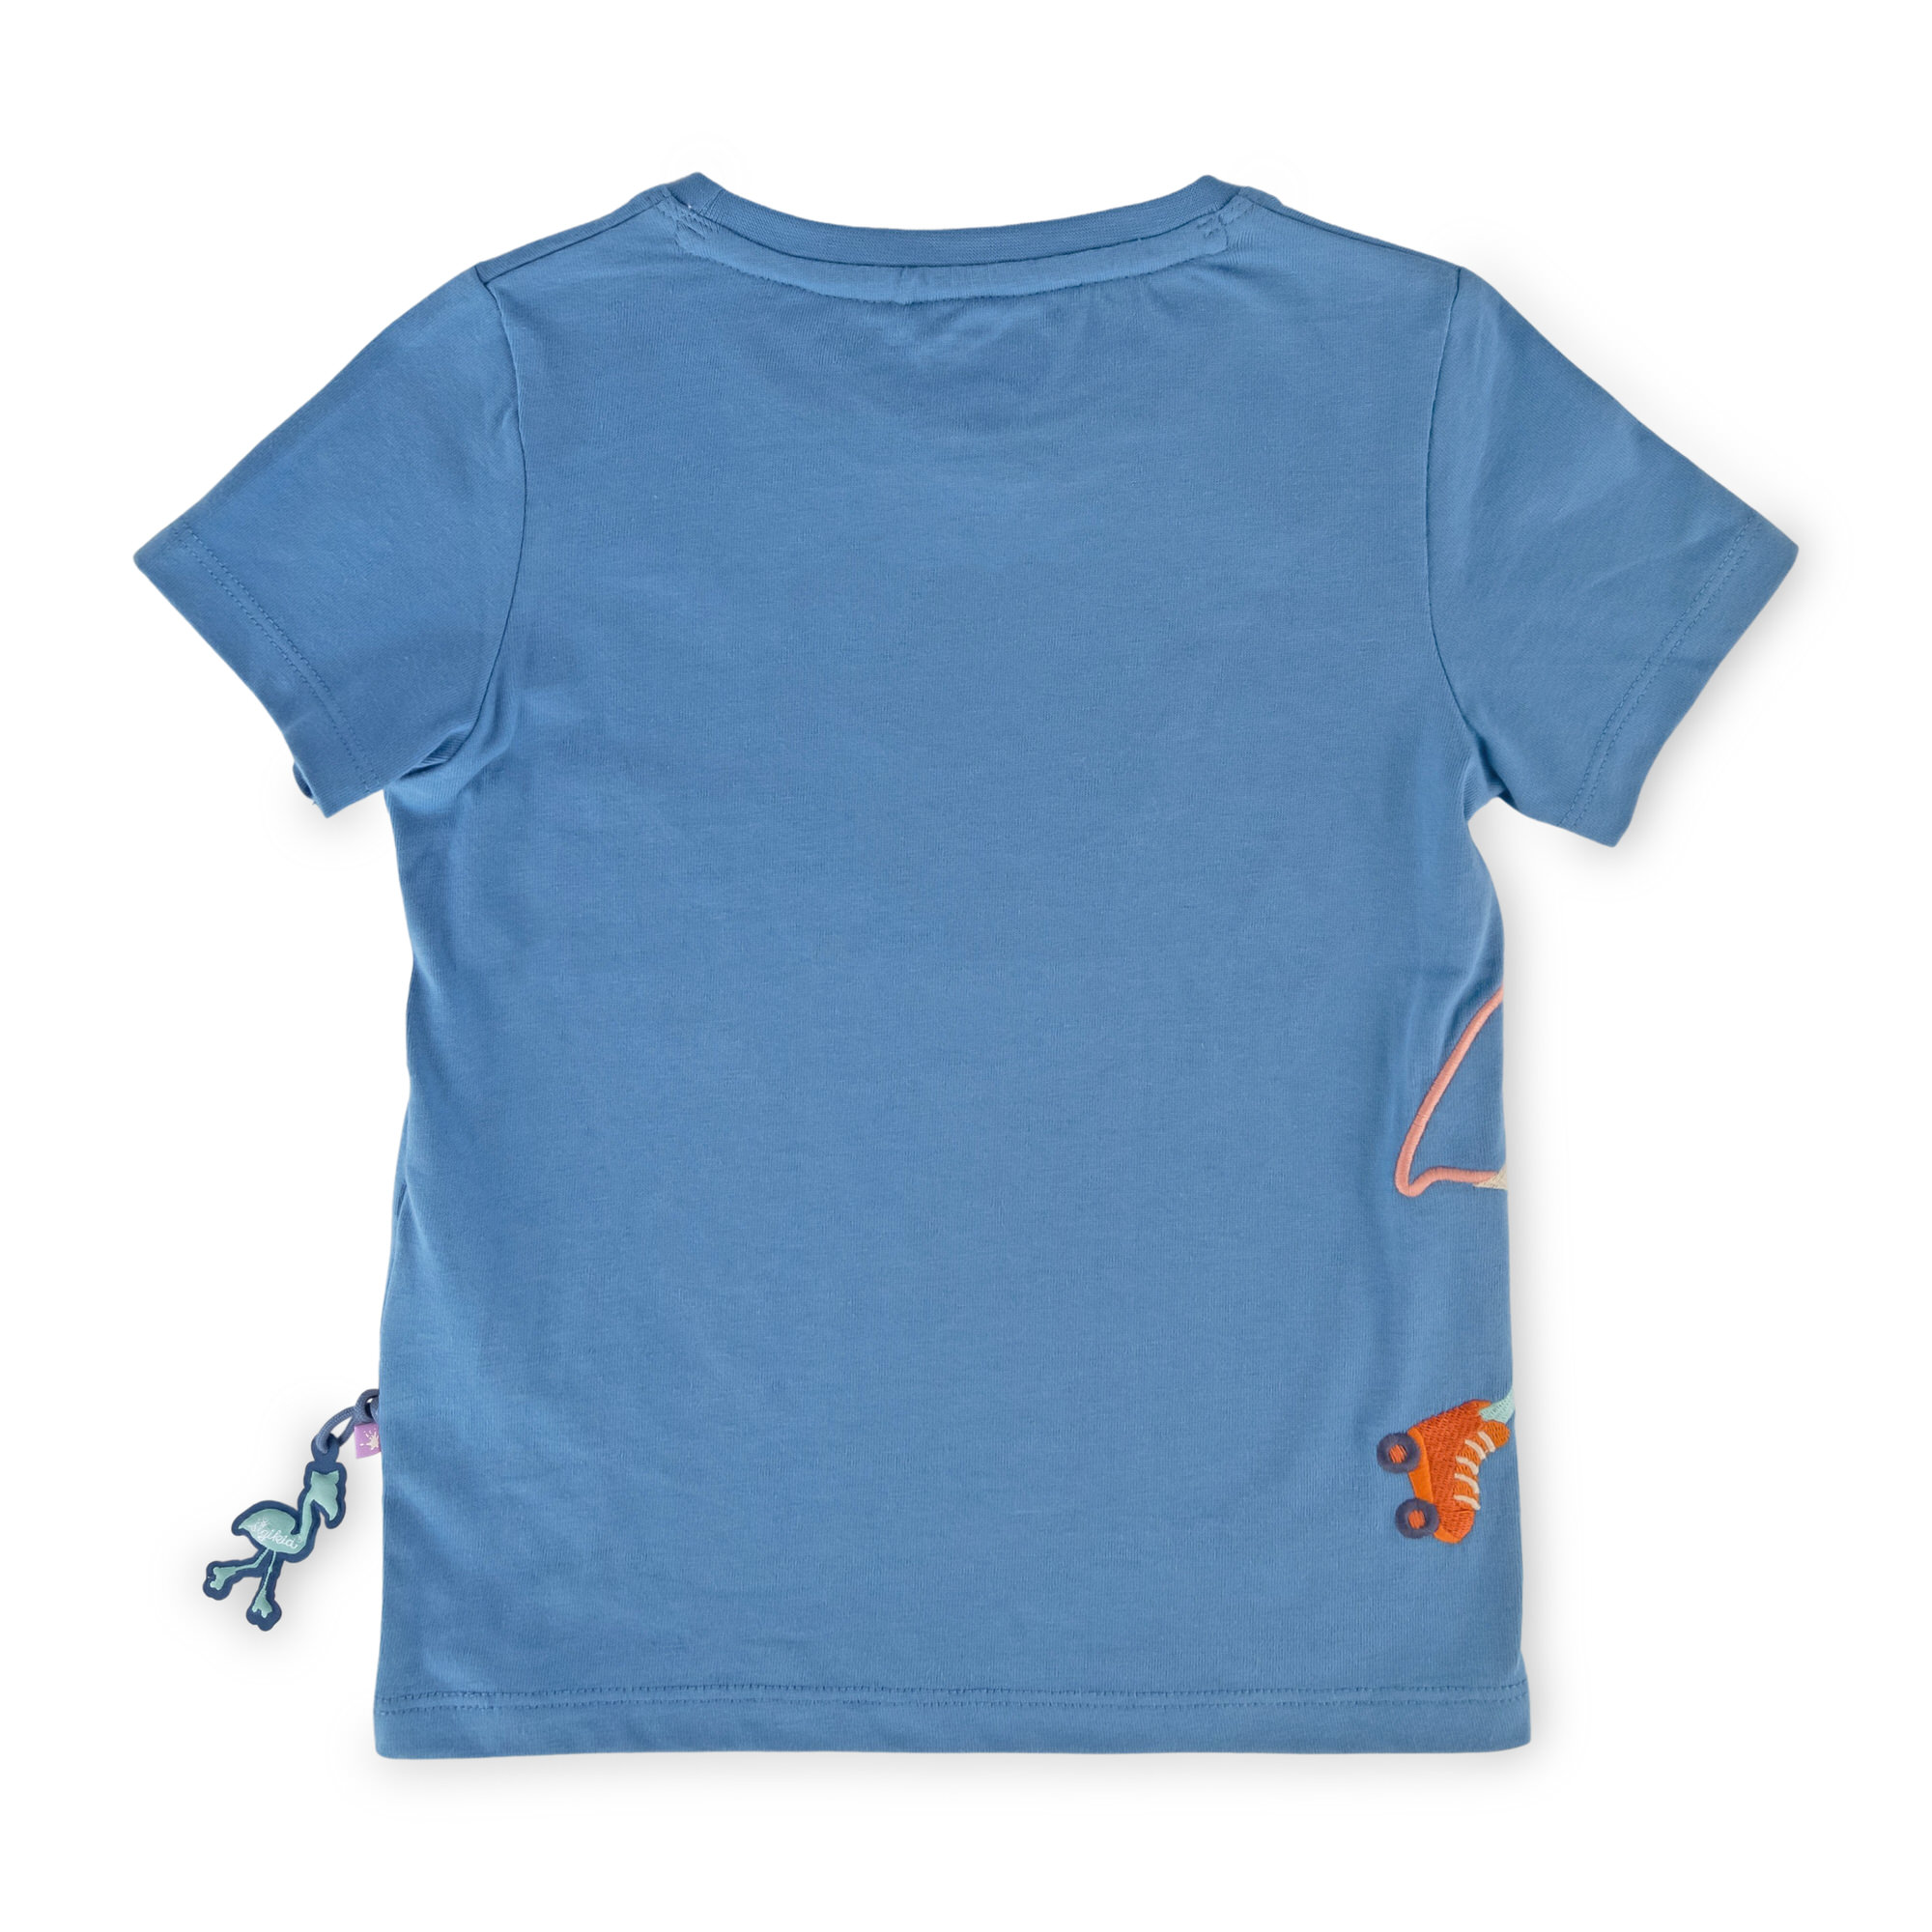 Azure blue girls' T-shirt flamingo